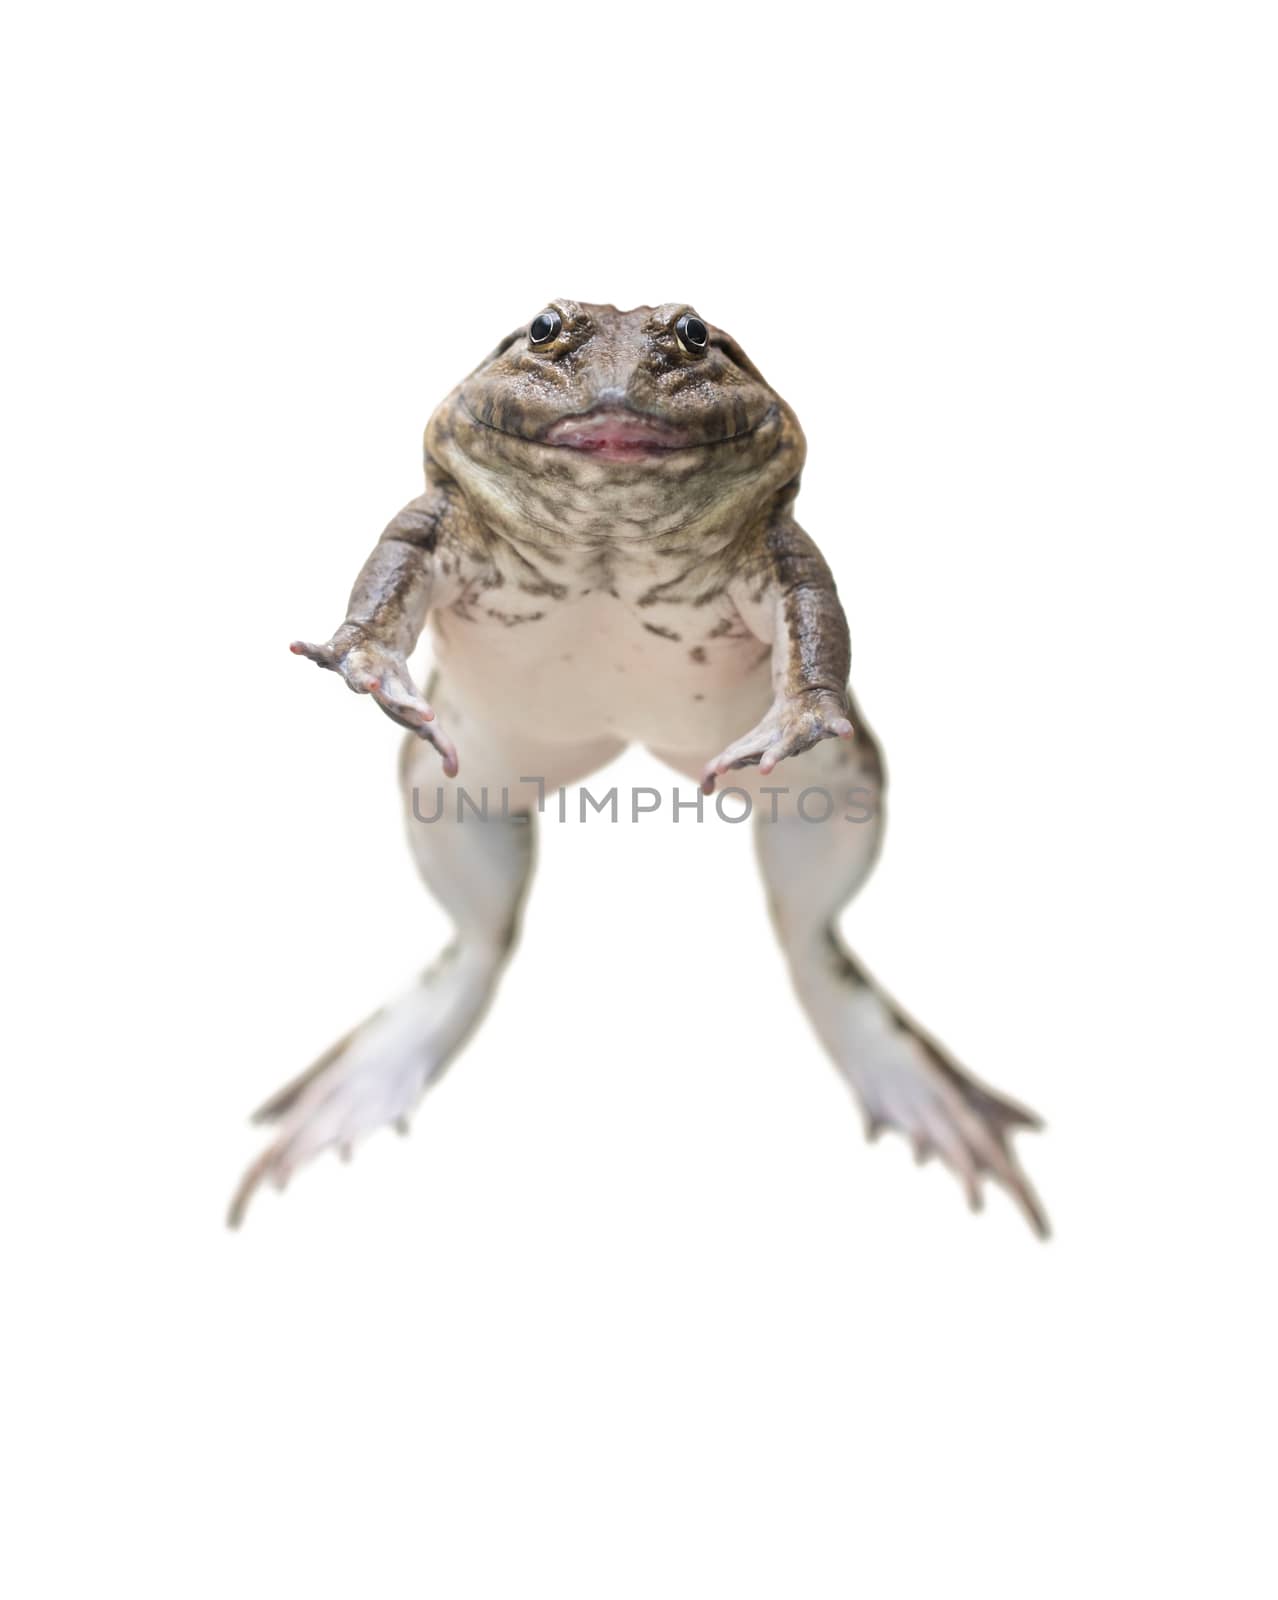 brown frog by antpkr